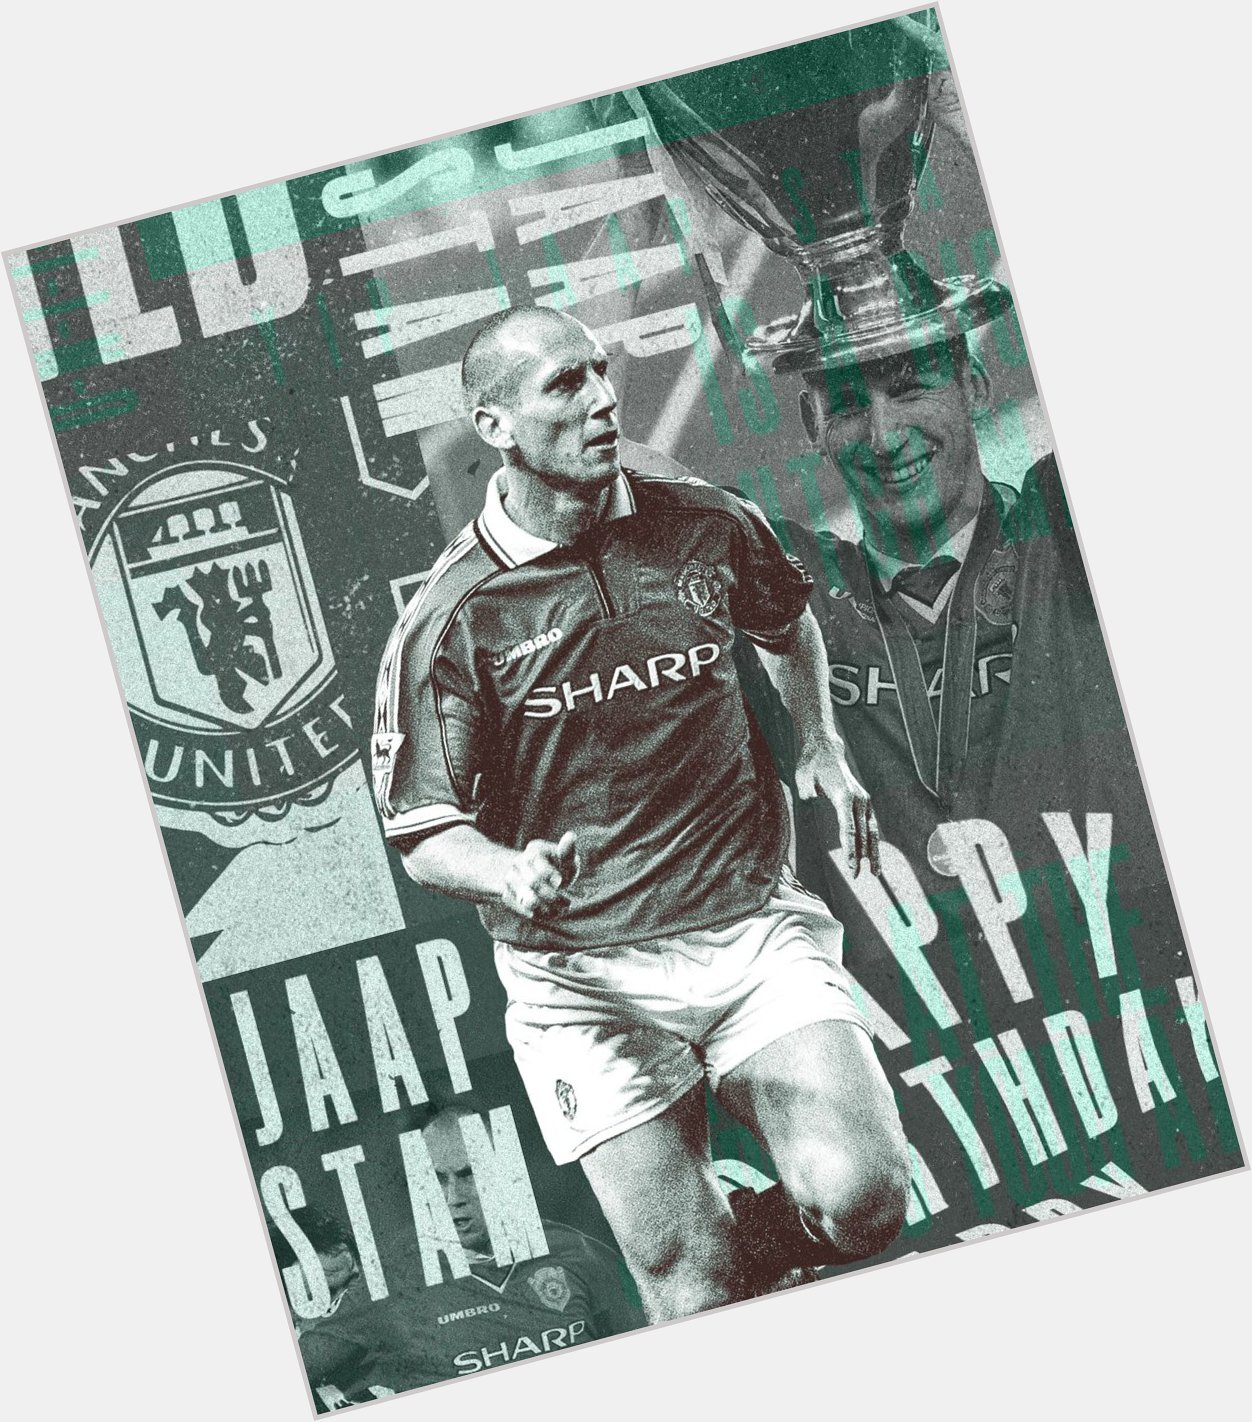    Happy birthday to our Dutch legend, Jaap Stam!  